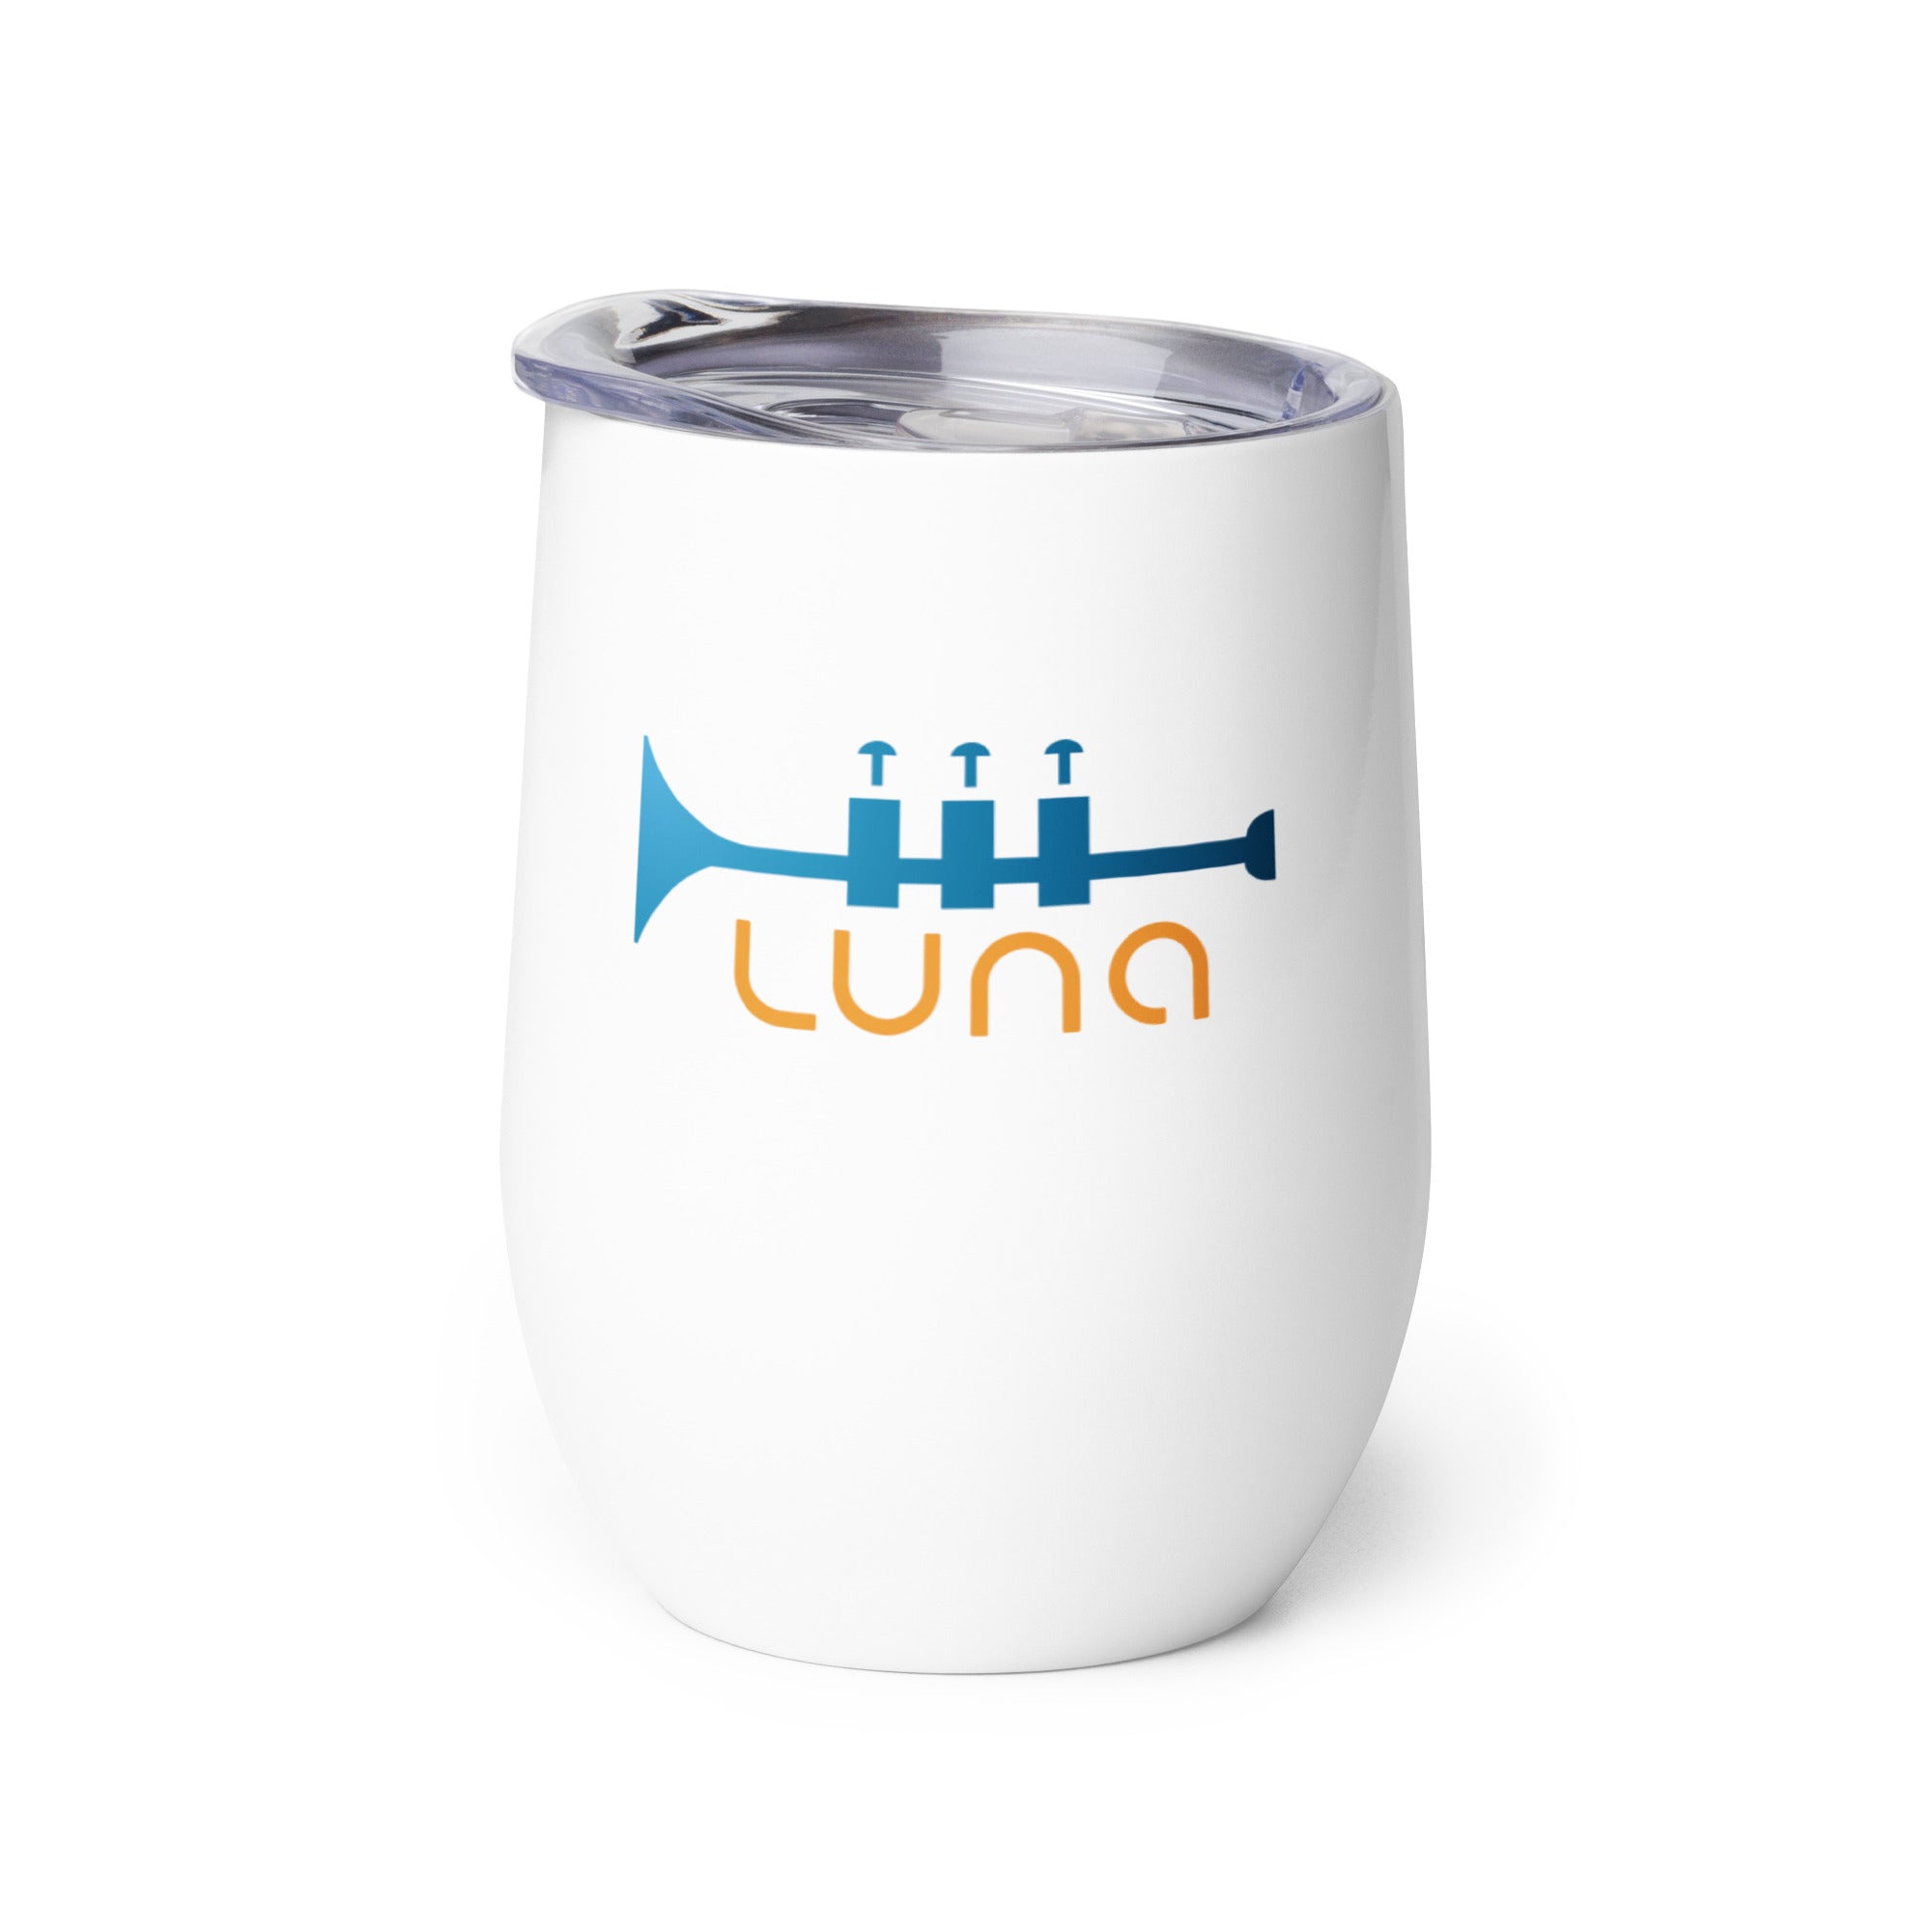 Luna: Wine Tumbler